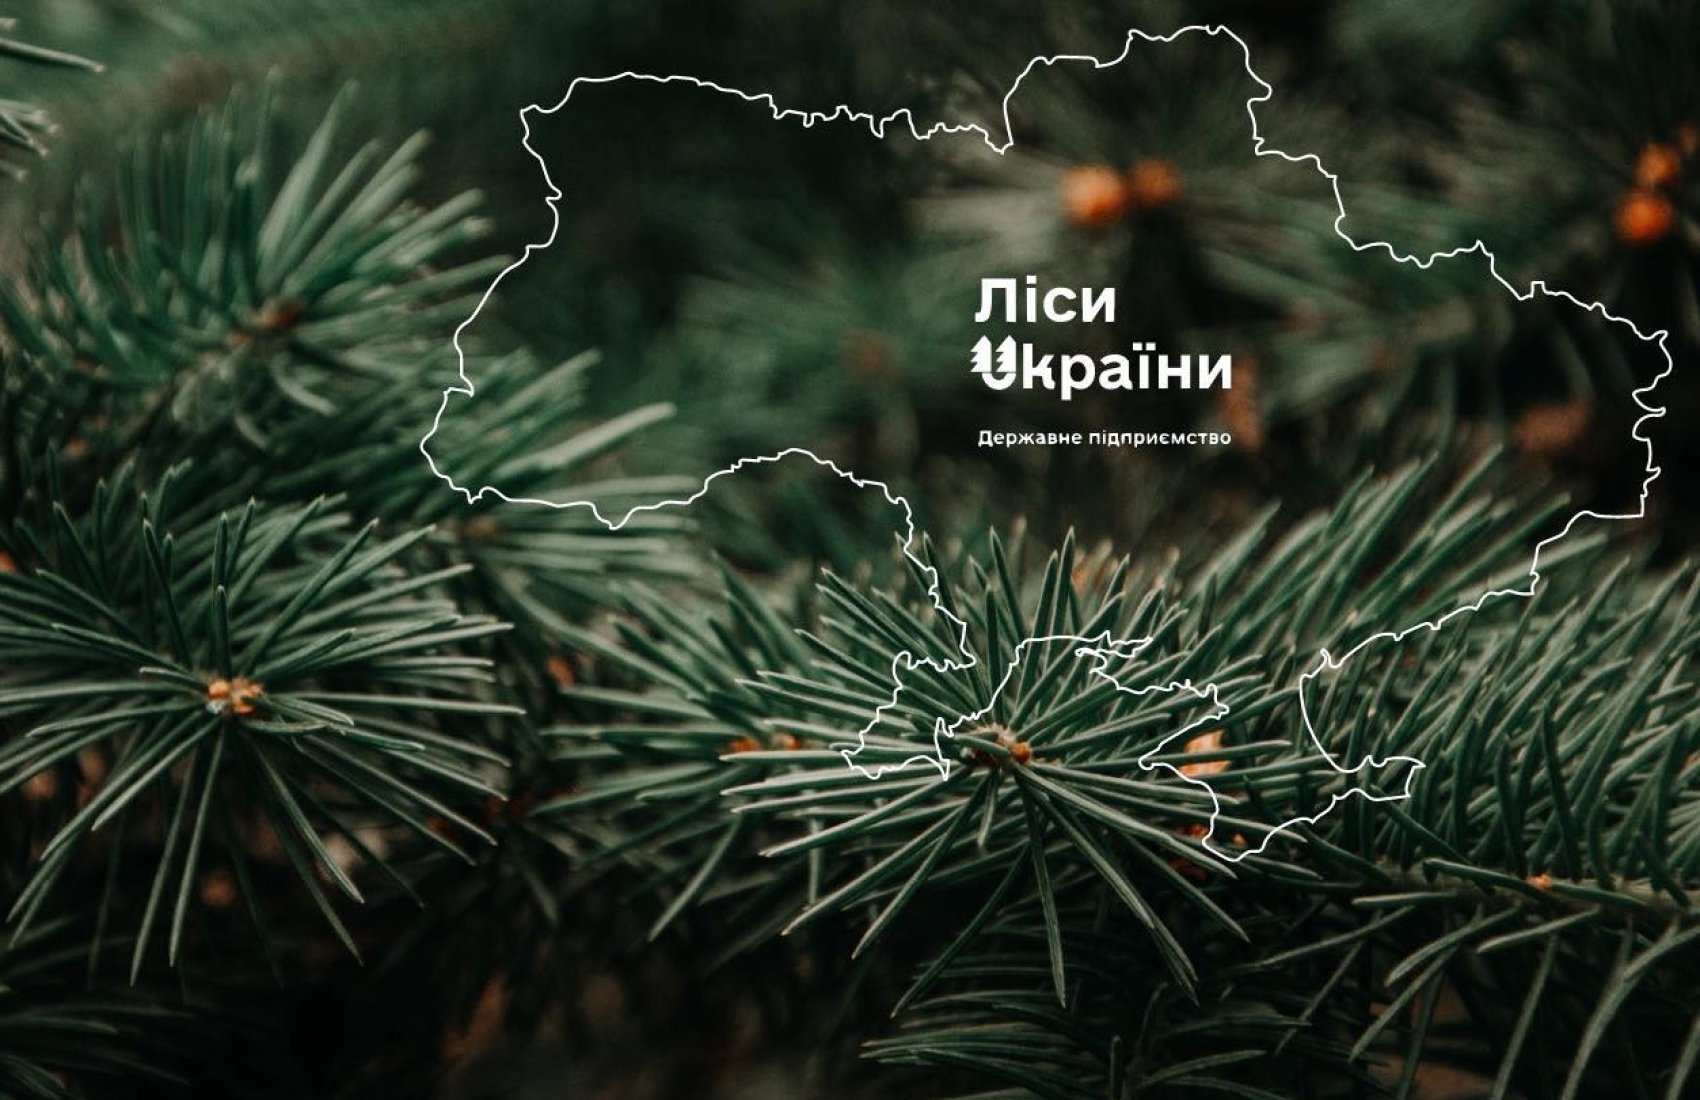 ФДМУ продав непрофільні активи “Лісів України”: вдалося виручити майже 10 мільйонів гривень